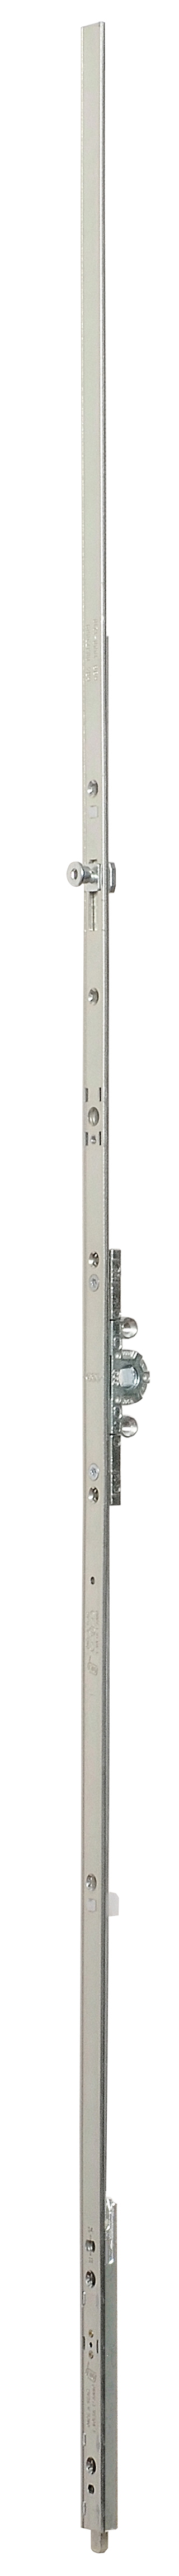 AGB -  Cremonese ARTECH anta a bandiera altezza maniglia fissa con puntale chiusura ad espansione per seconda anta - gr / dim. 08 - entrata 15 - alt. man. 1050 - lbb/hbb 1800 - 2110